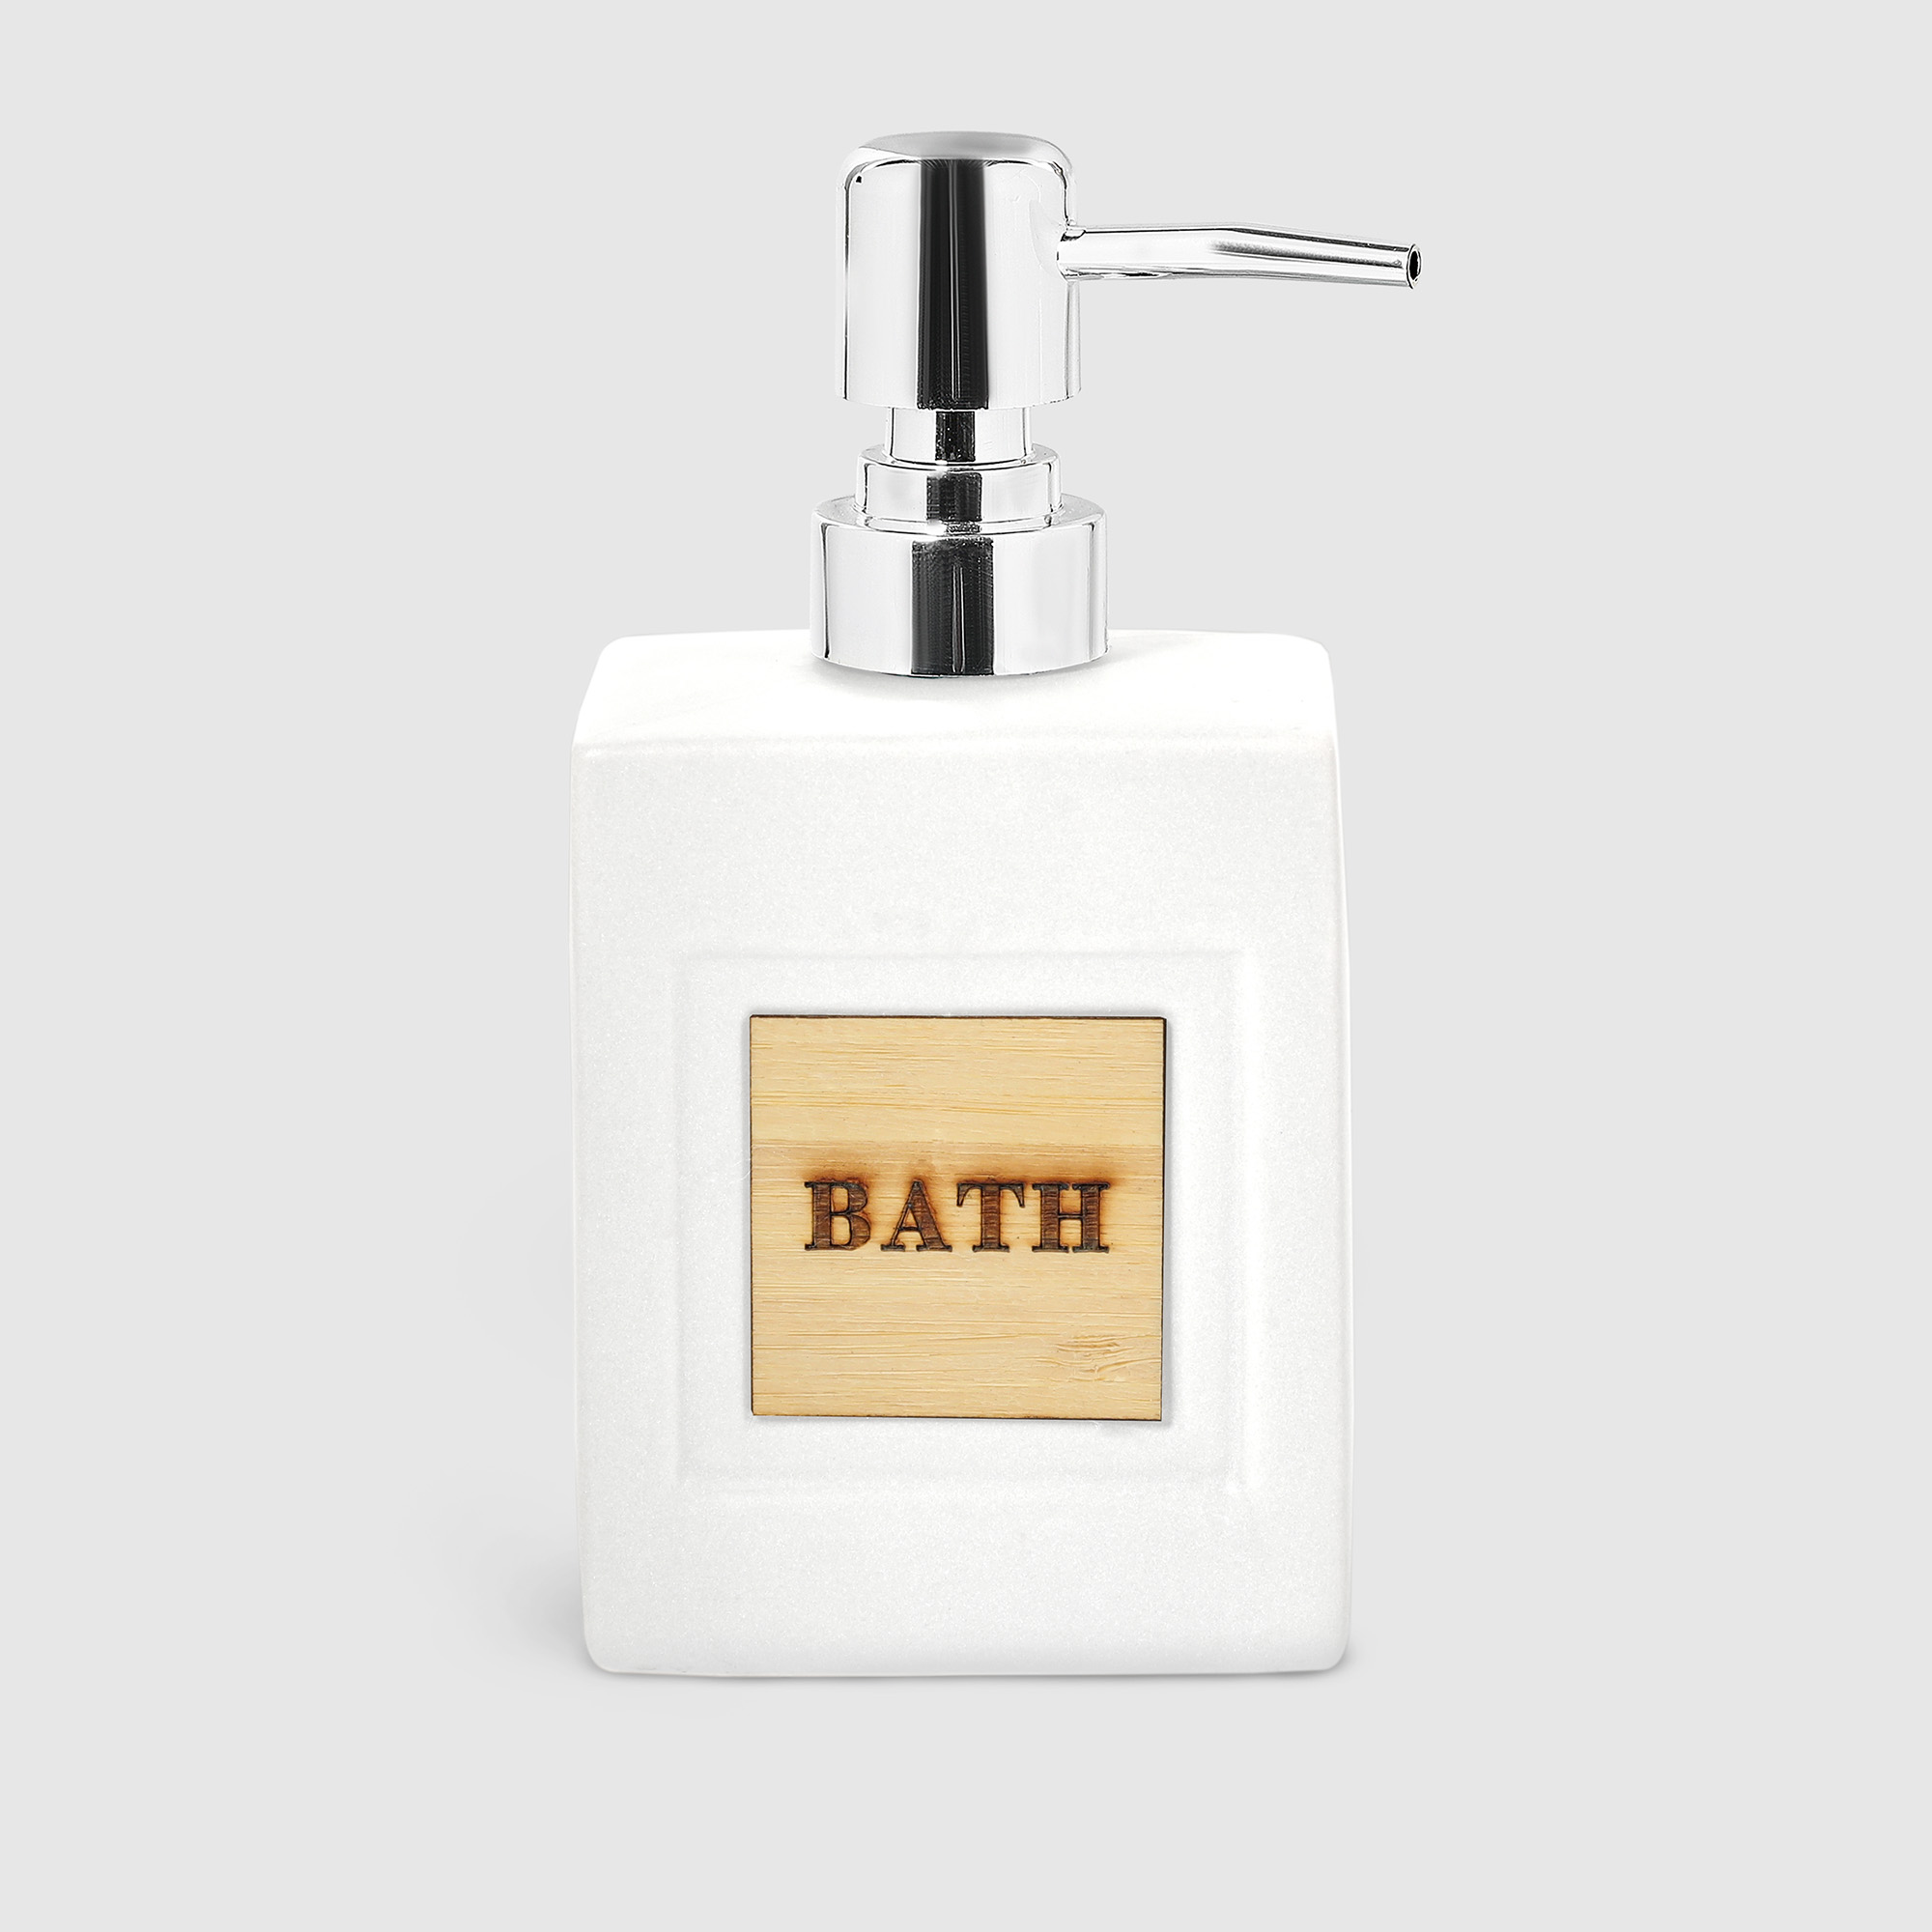 Диспенсер Mercury Sanitary BATH для жидкого мыла, в ассортименте - фото 7